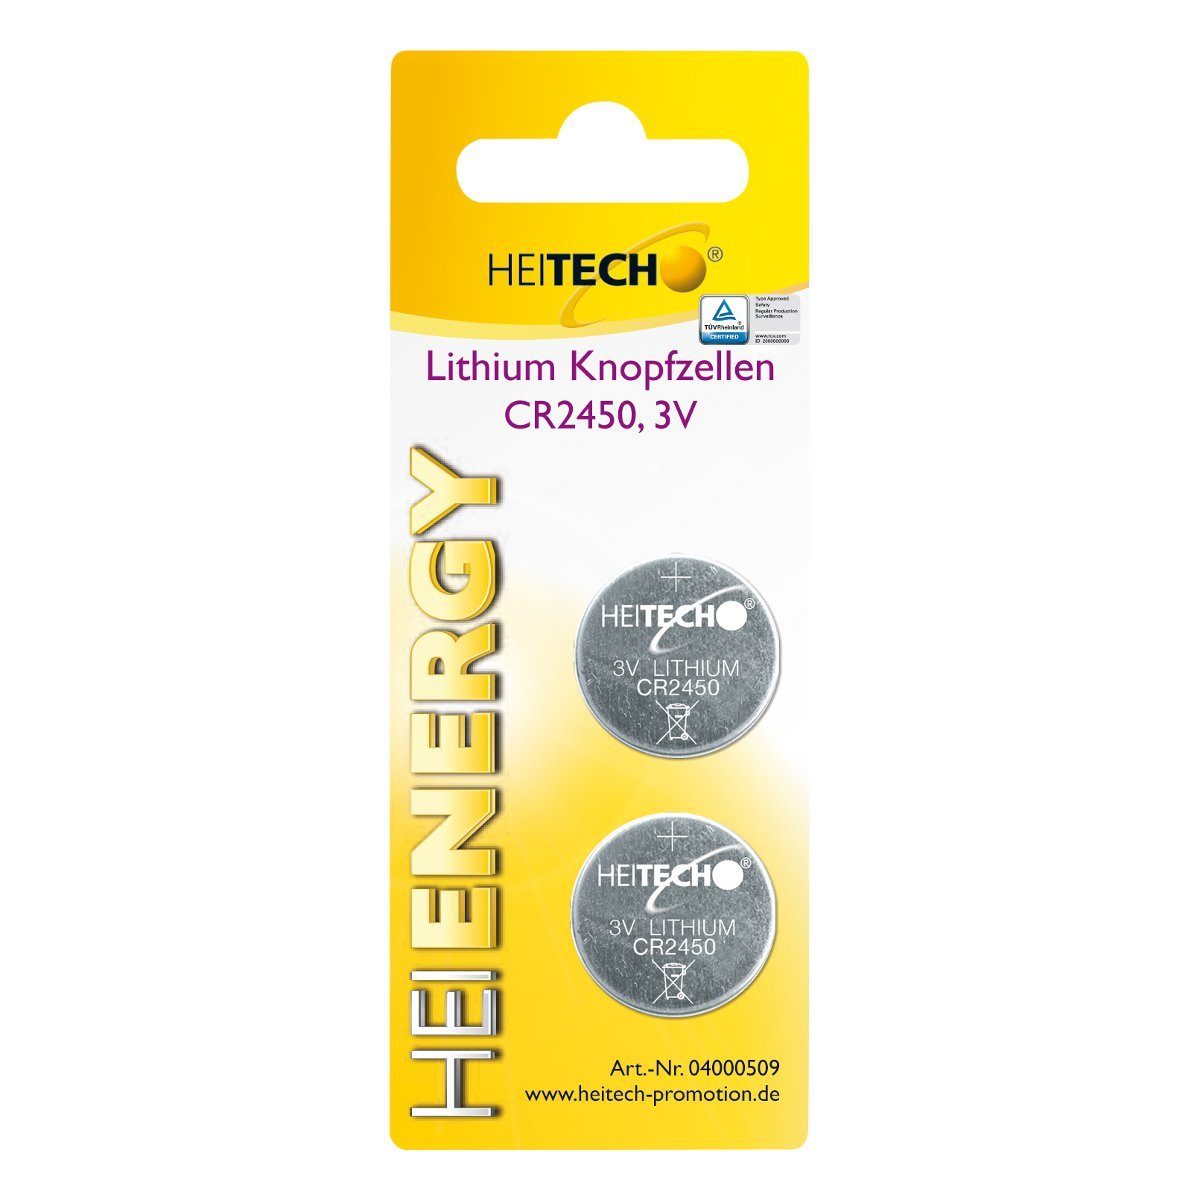 HEITECH Lithium Knopfzellen, 2-er Pack, CR2450, 3 V Knopfzelle